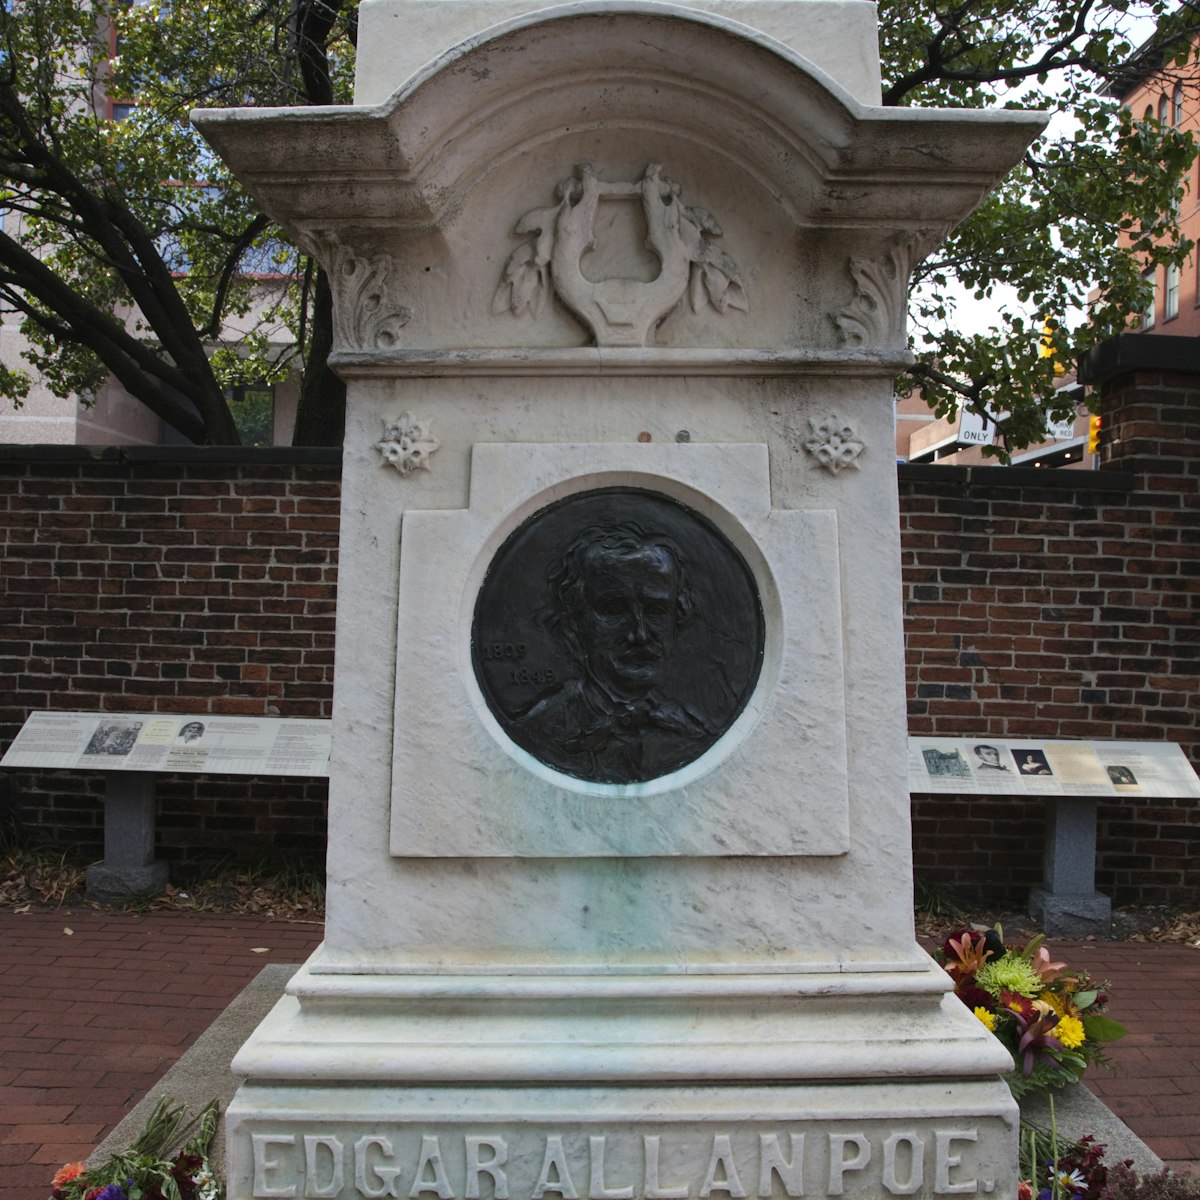 Edgar Allan Poe's Gravesite